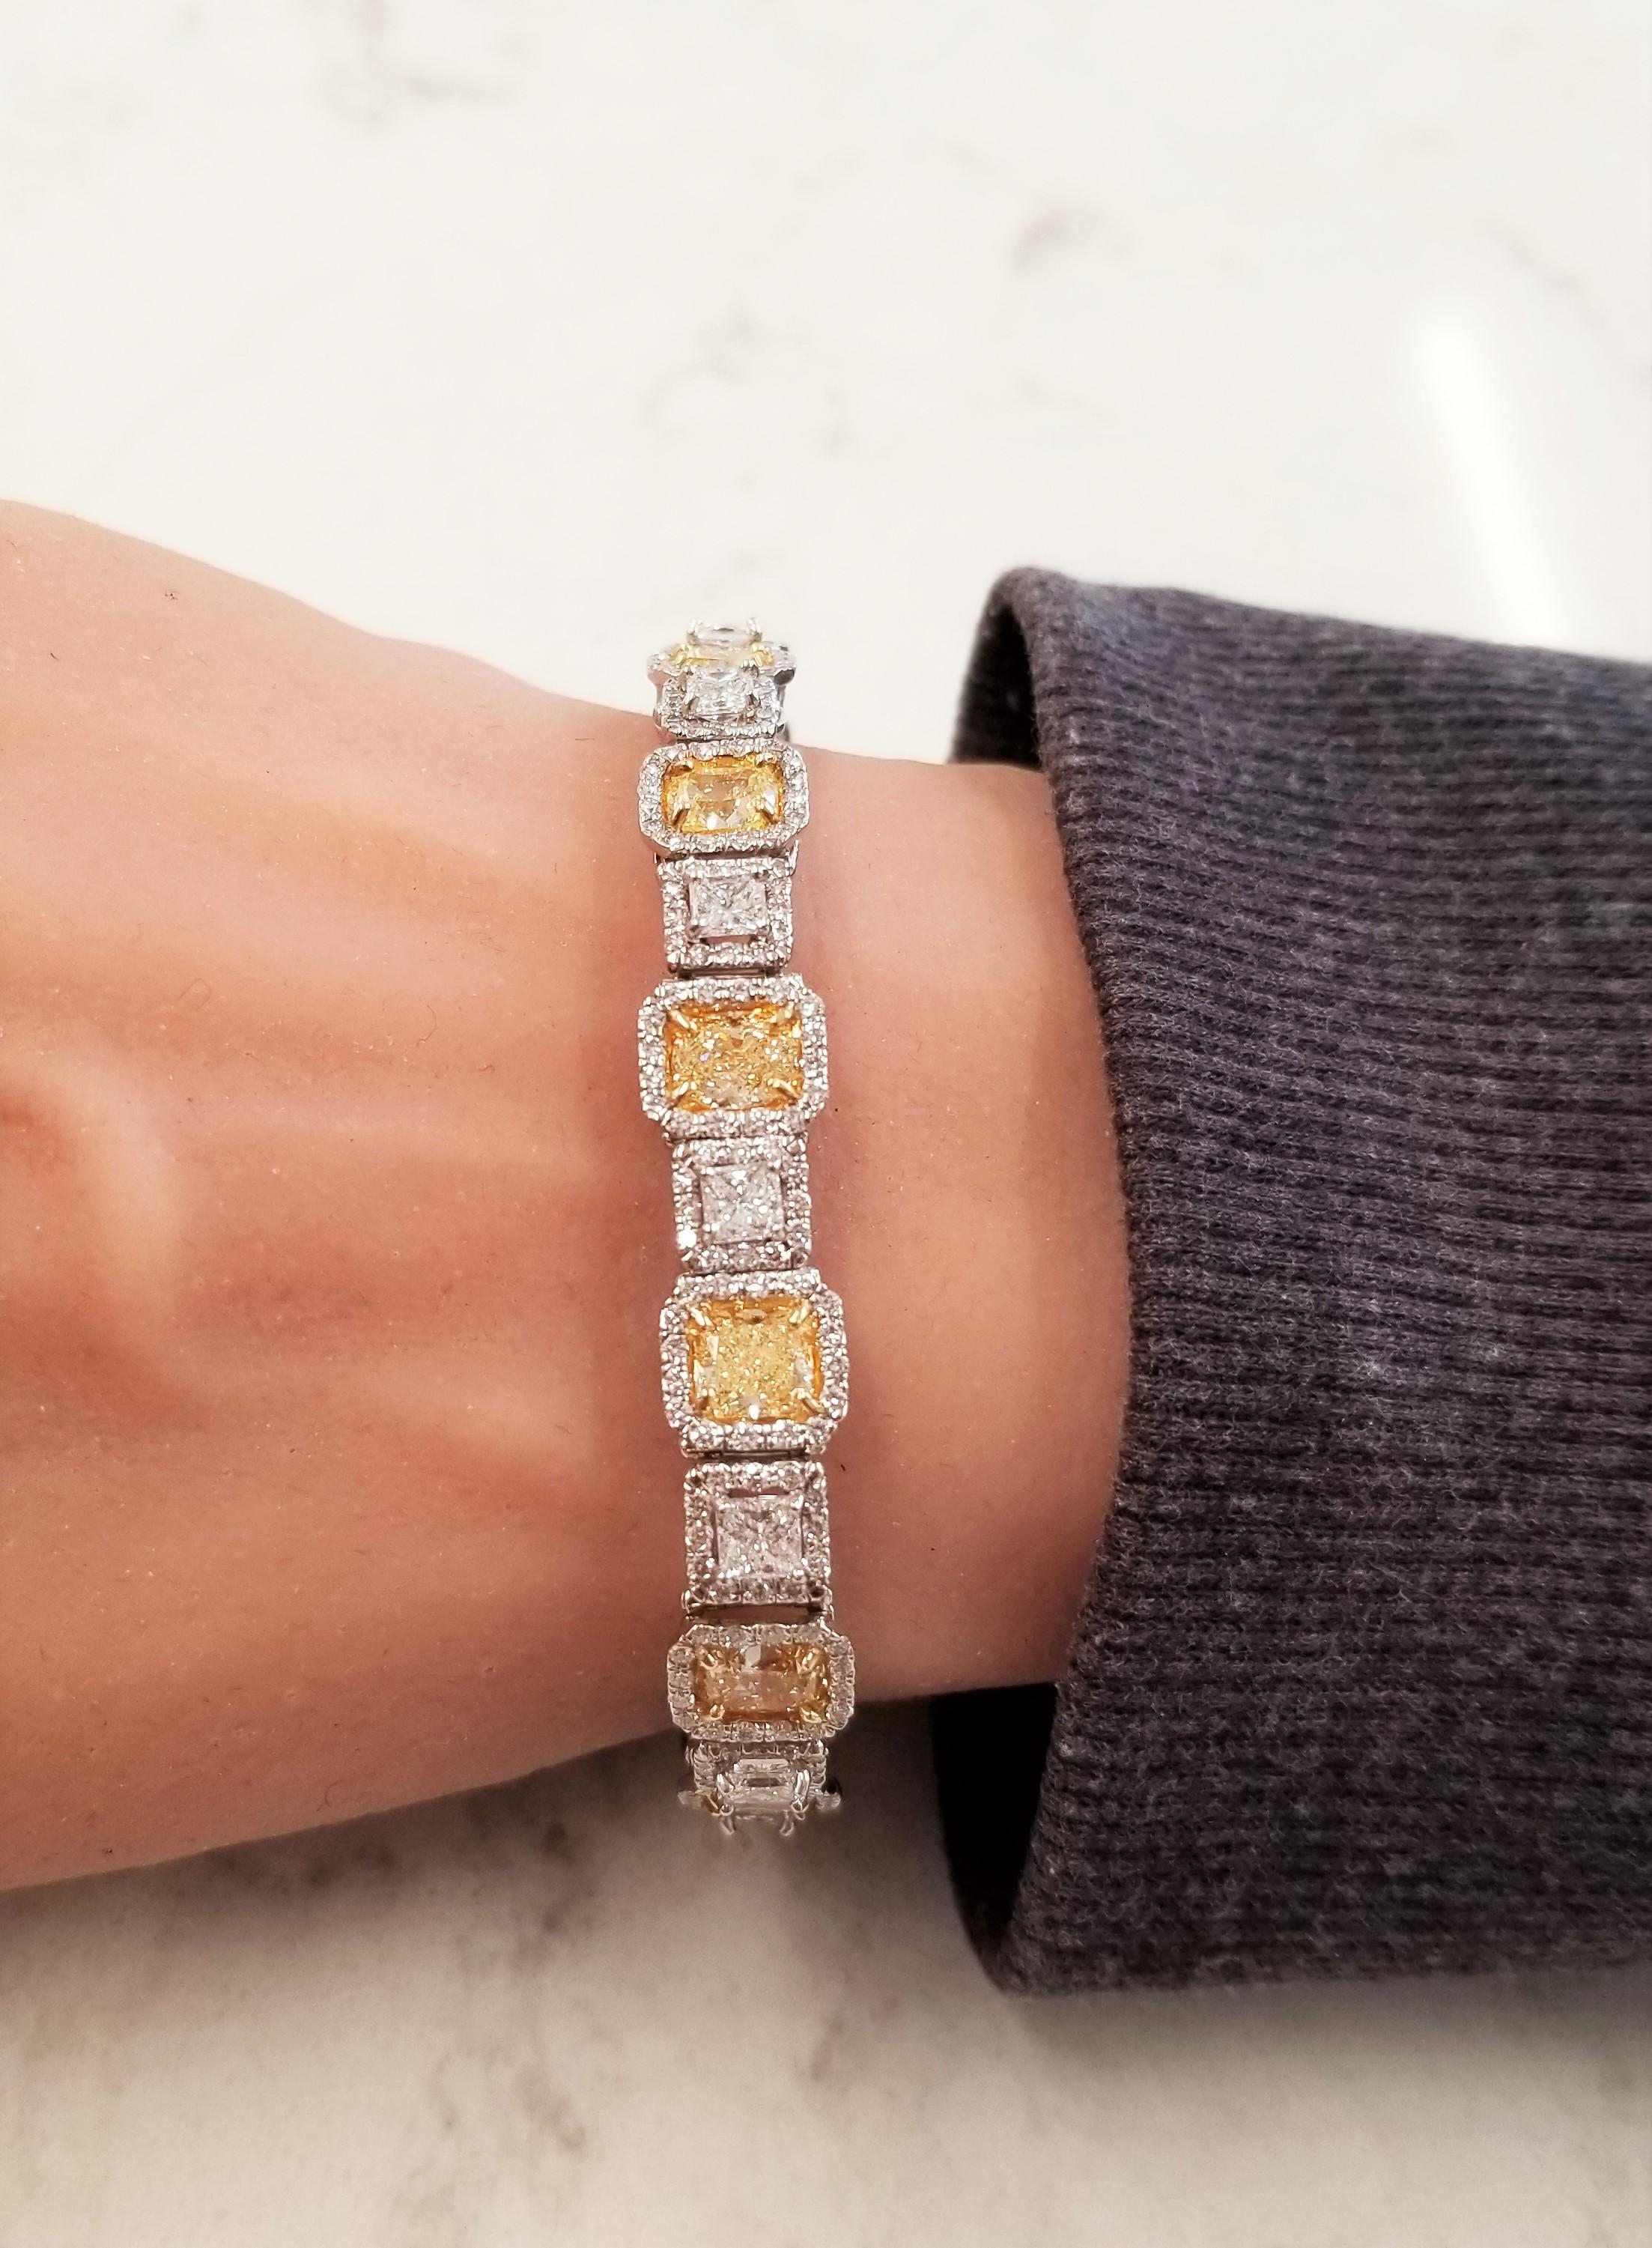 Dieses Armband ist purer Diamantenluxus. 13 natürliche gelbe Diamanten im Kissenschliff wiegen 10,5 Karat und sind mit 13 atemberaubenden weißen Diamanten im Prinzessschliff von insgesamt 3,55 Karat gepaart. Die Konstruktion dieses Armbands ist